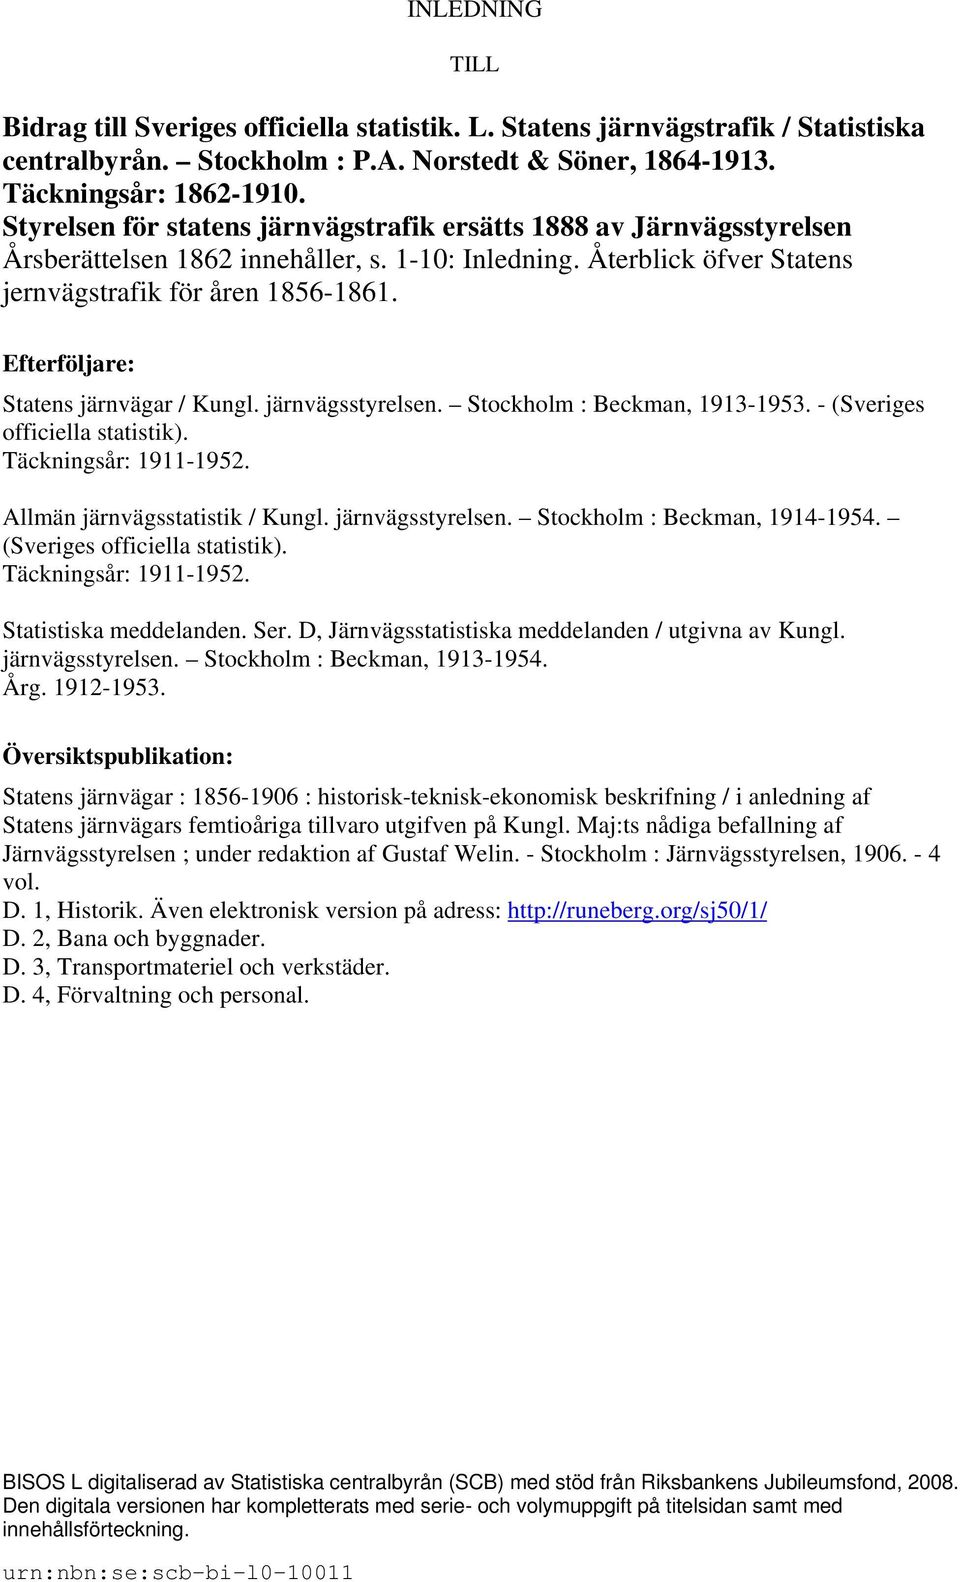 Efterföljare: Statens järnvägar / Kungl. järnvägsstyrelsen. Stockholm : Beckman, 1913-1953. - (Sveriges officiella statistik). Täckningsår: 1911-1952. Allmän järnvägsstatistik / Kungl.